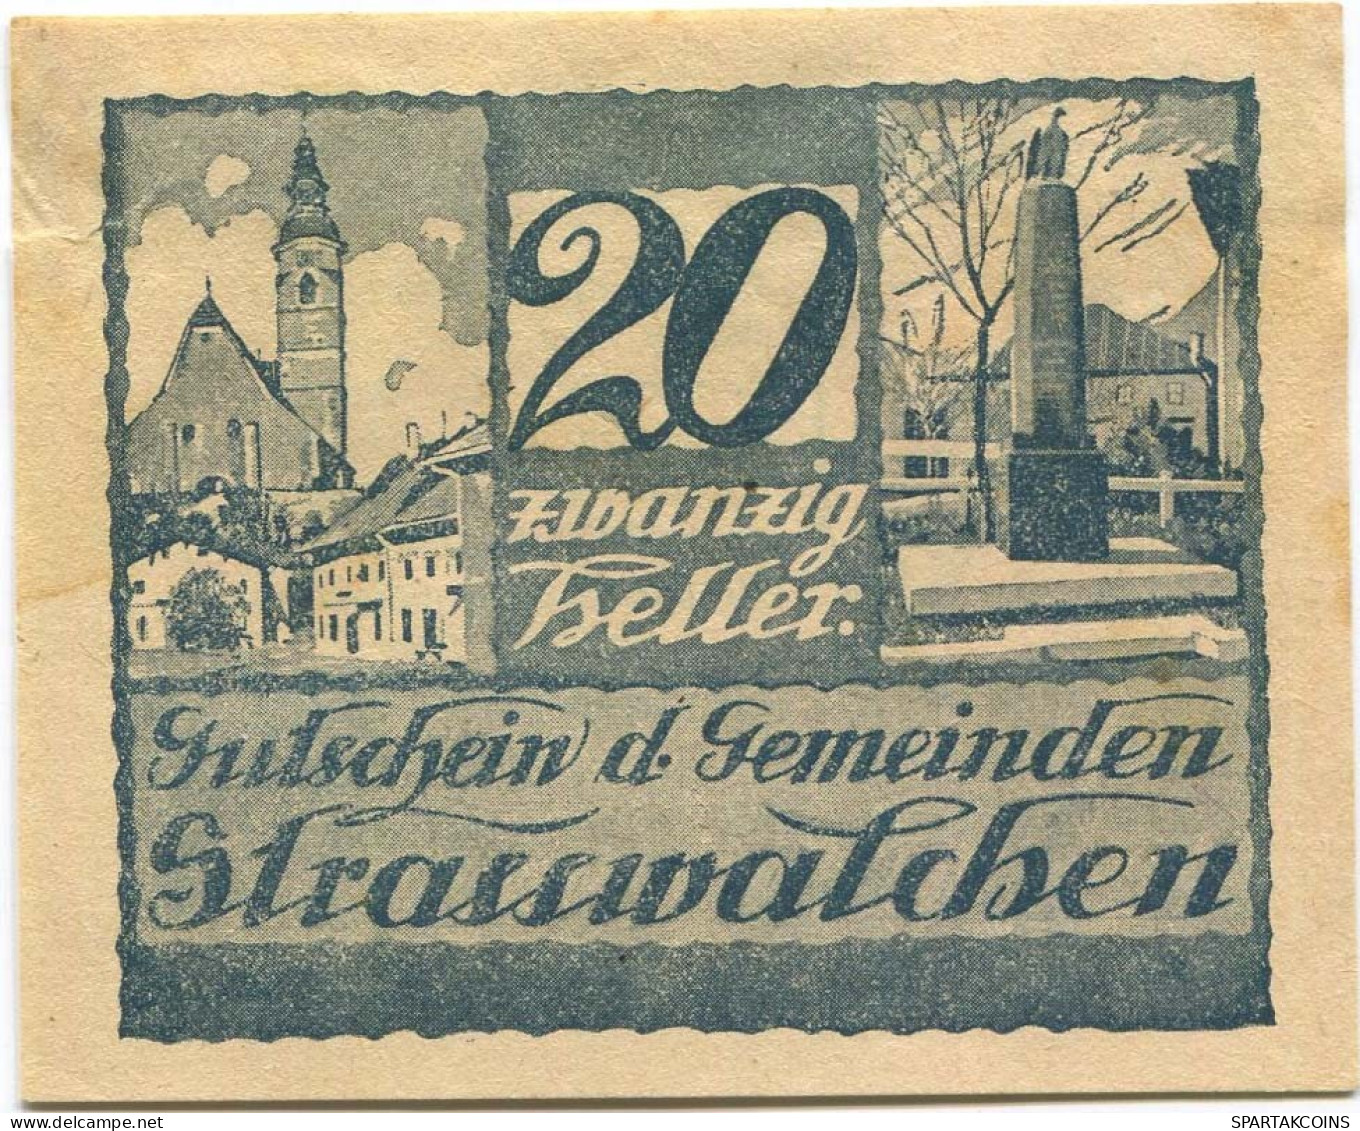 20 HELLER 1920 Stadt STRASSWALCHEN Salzburg Österreich Notgeld Papiergeld Banknote #PL810 - Lokale Ausgaben